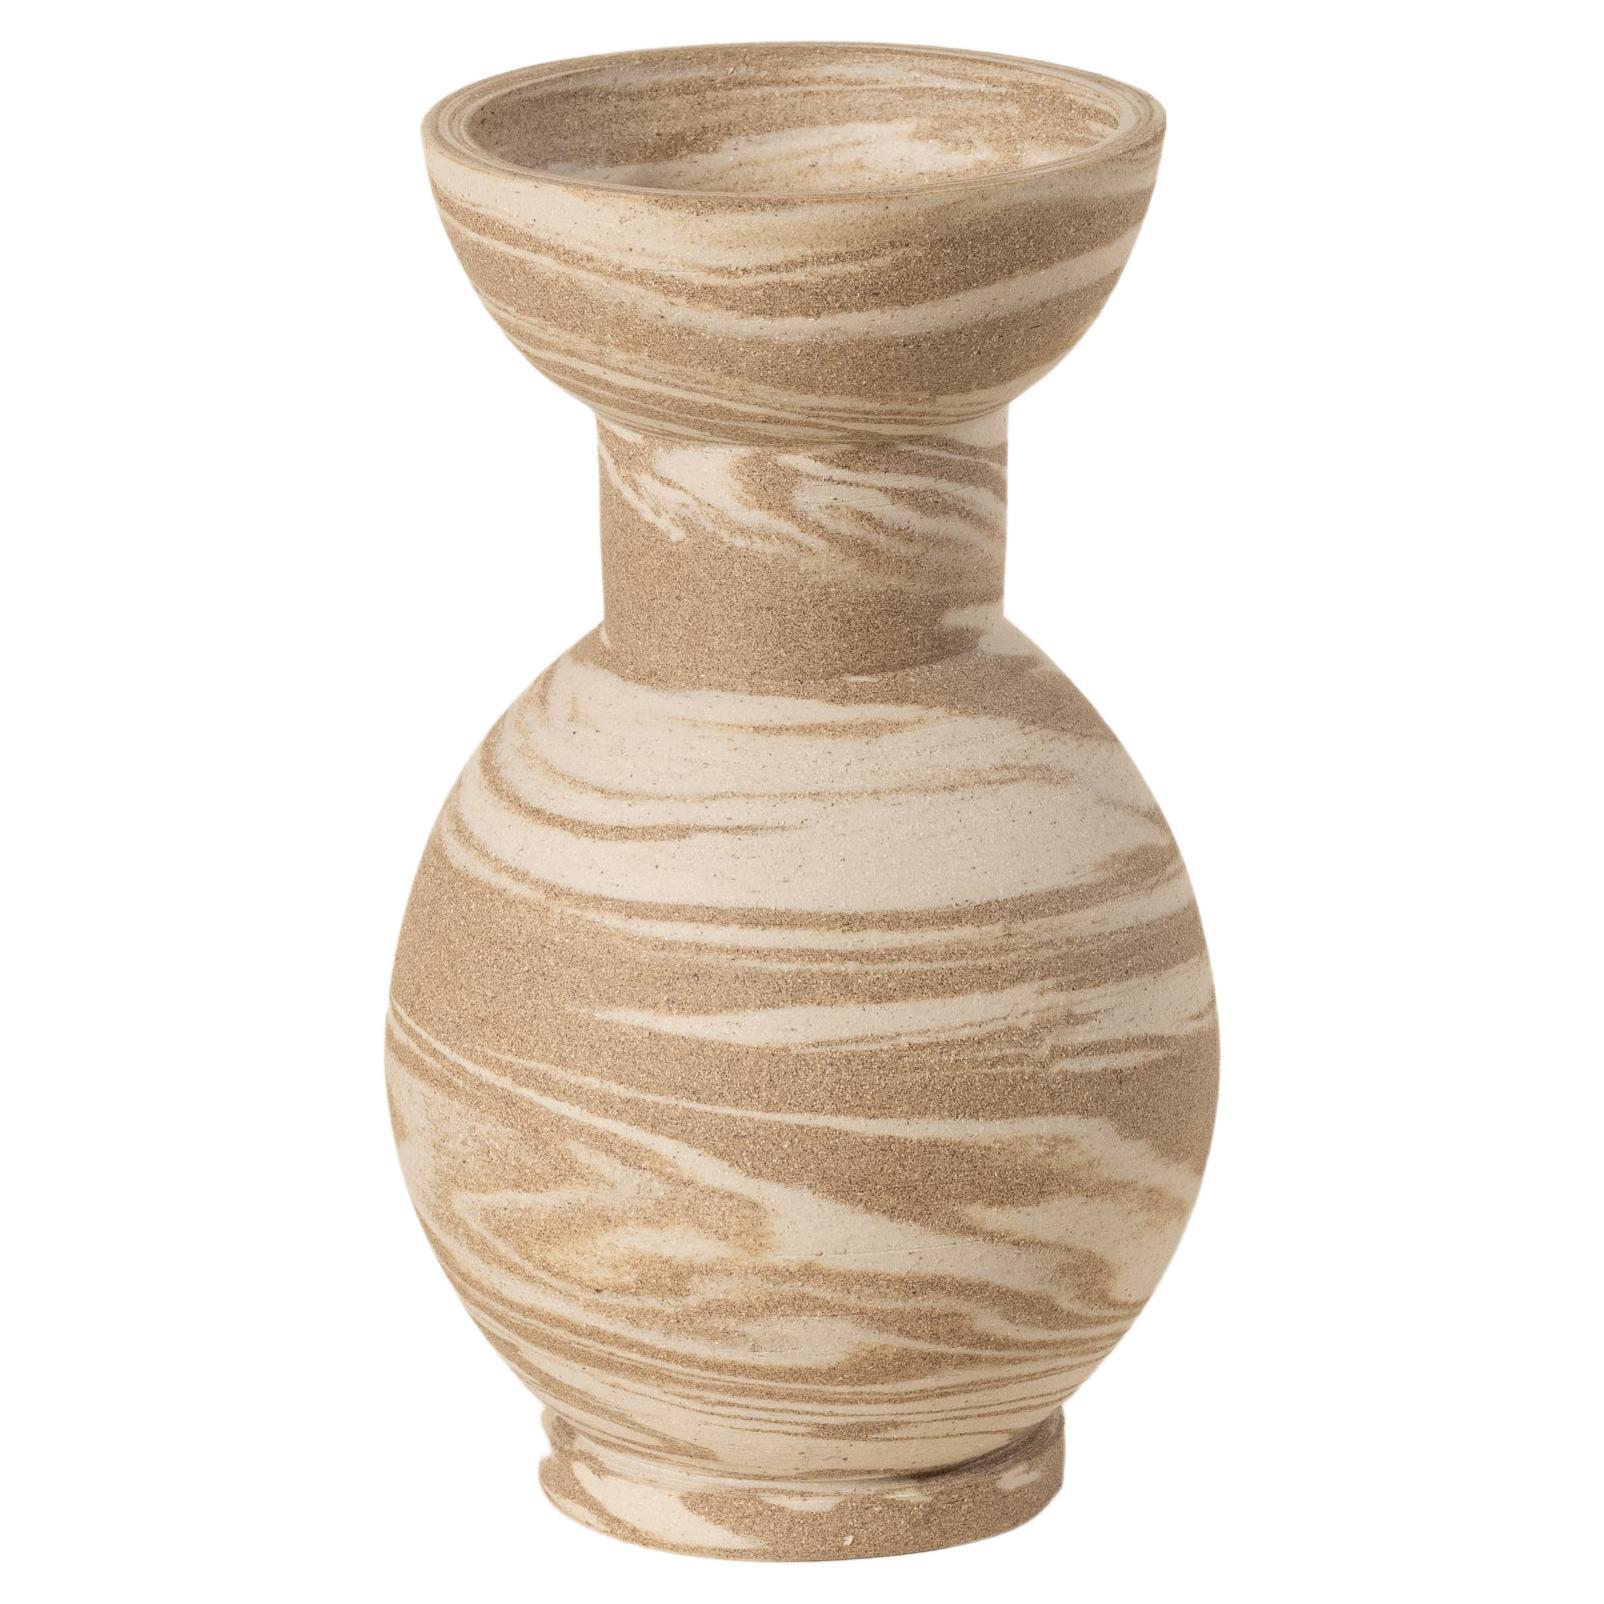 Arabesque vase For Sale